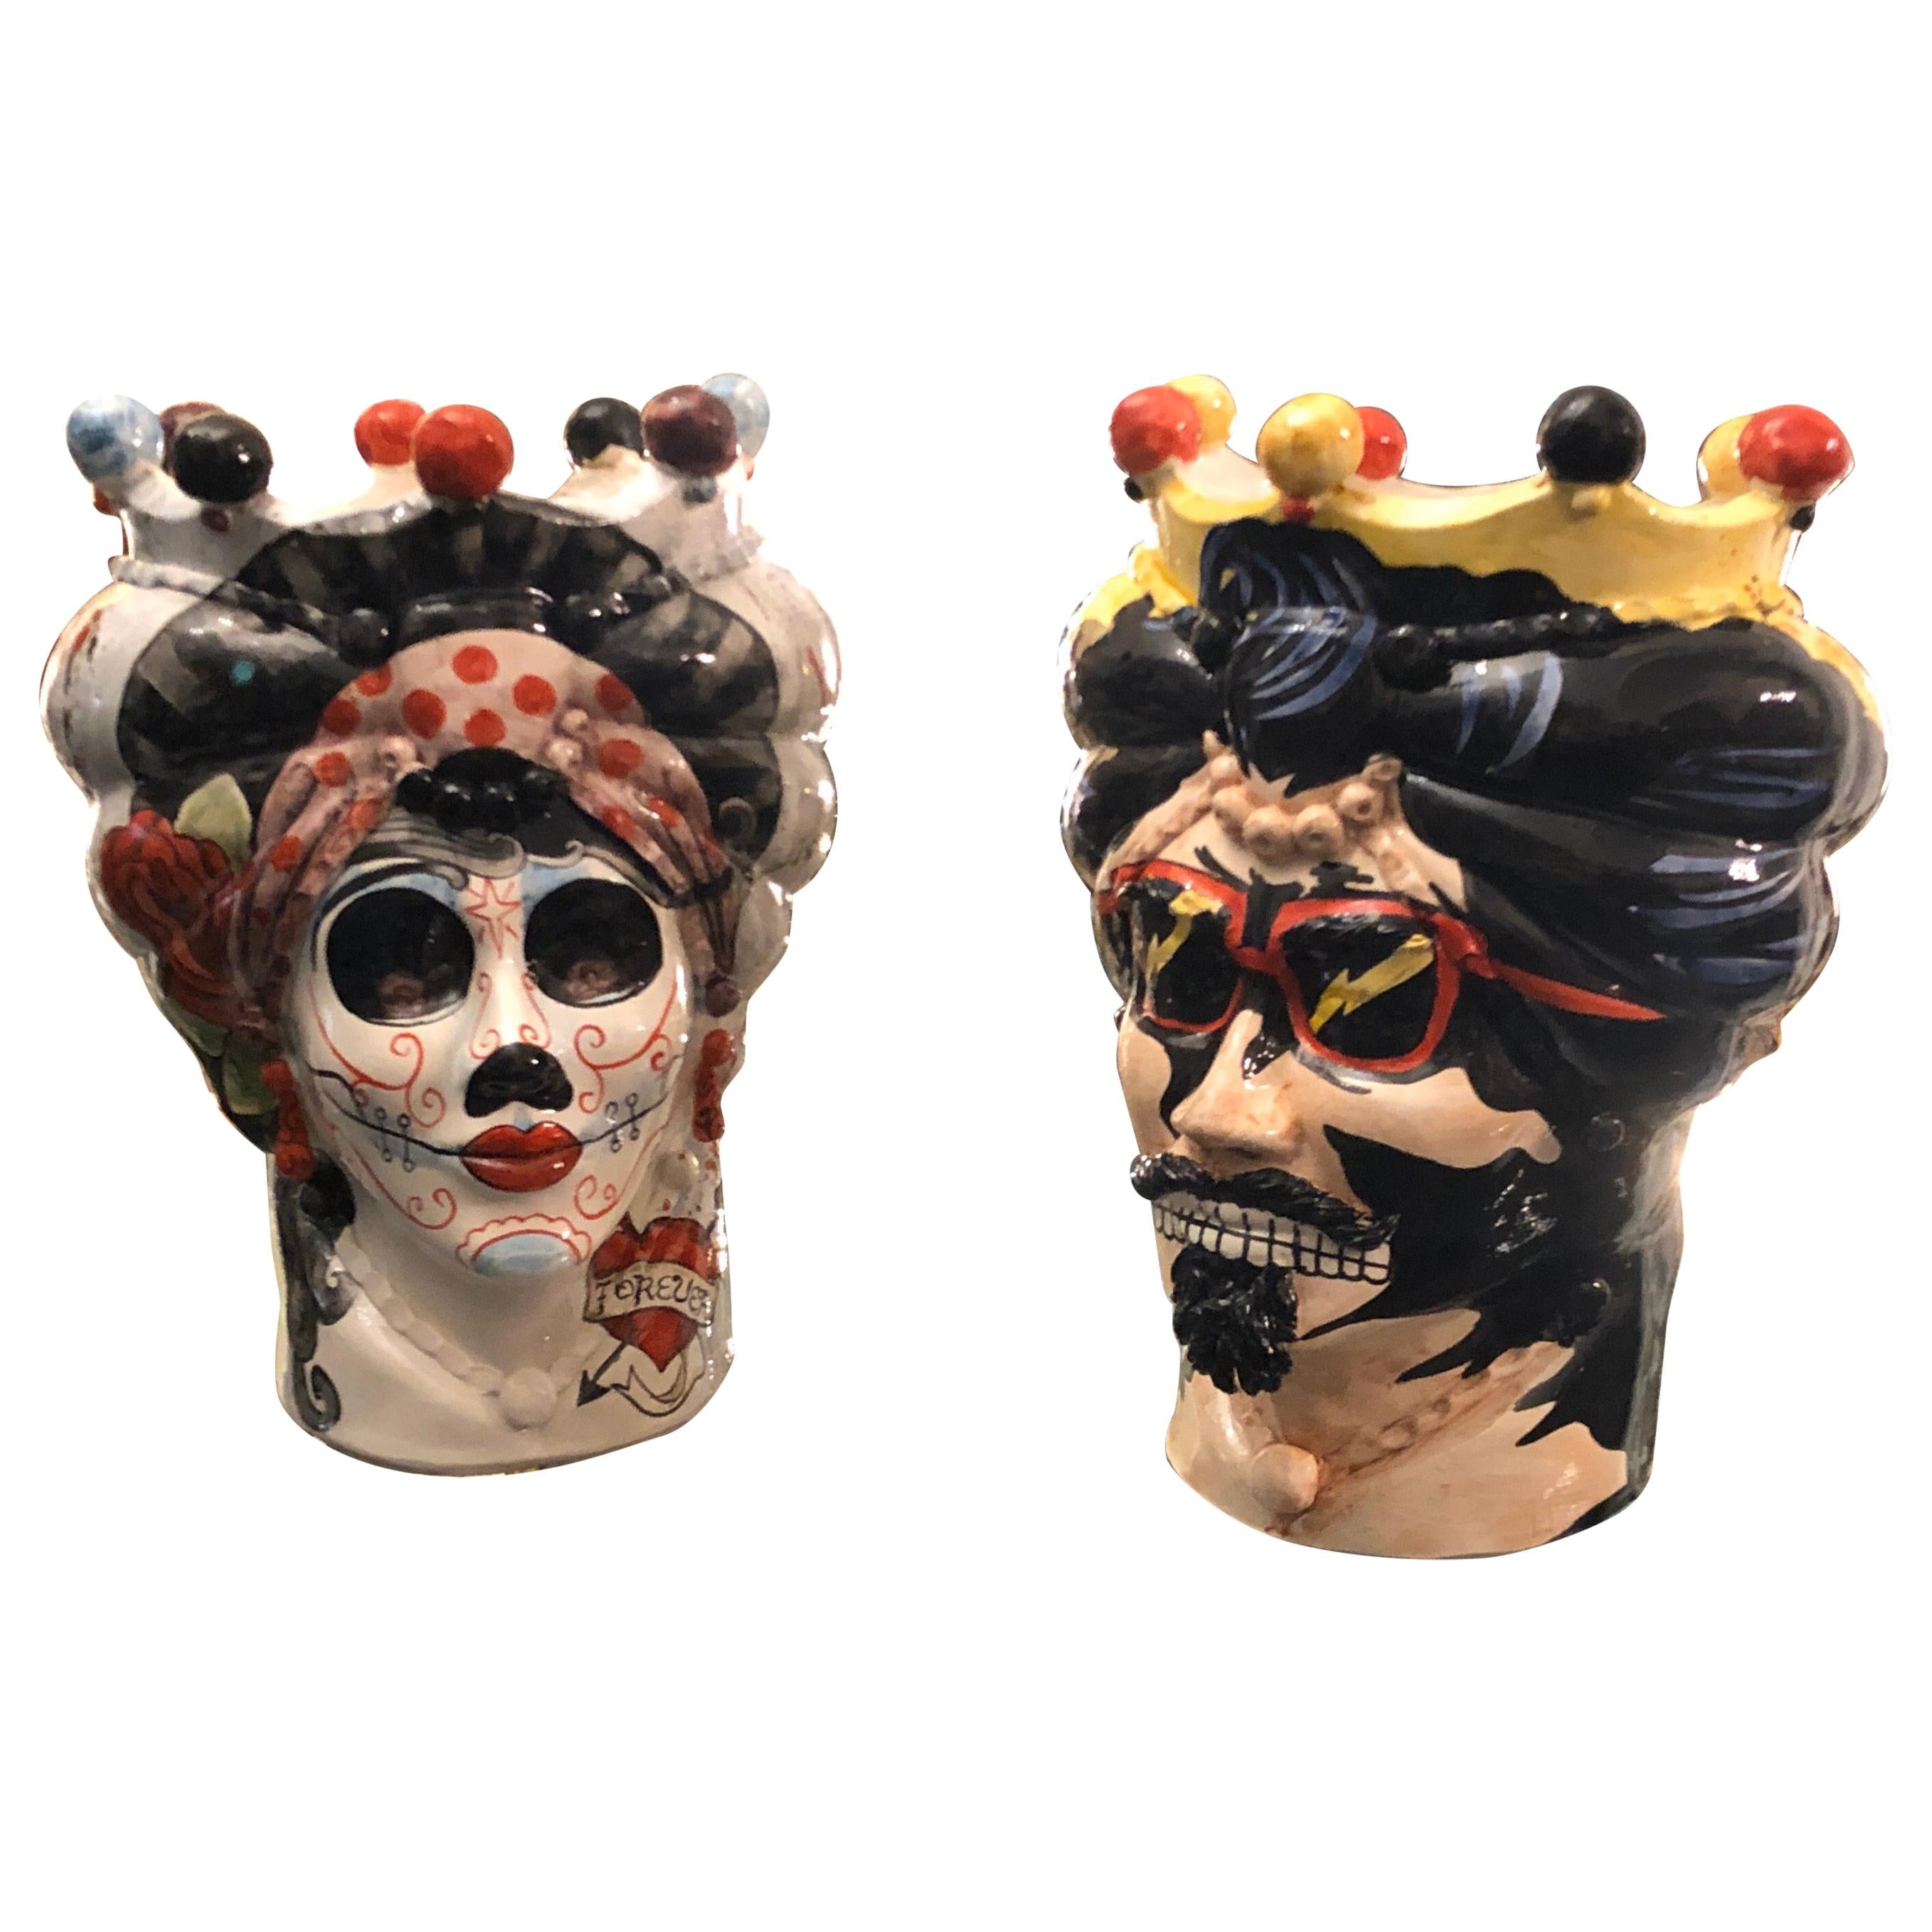 Set of Two Unique Hand Painted Ceramic Sicilian Head Vases